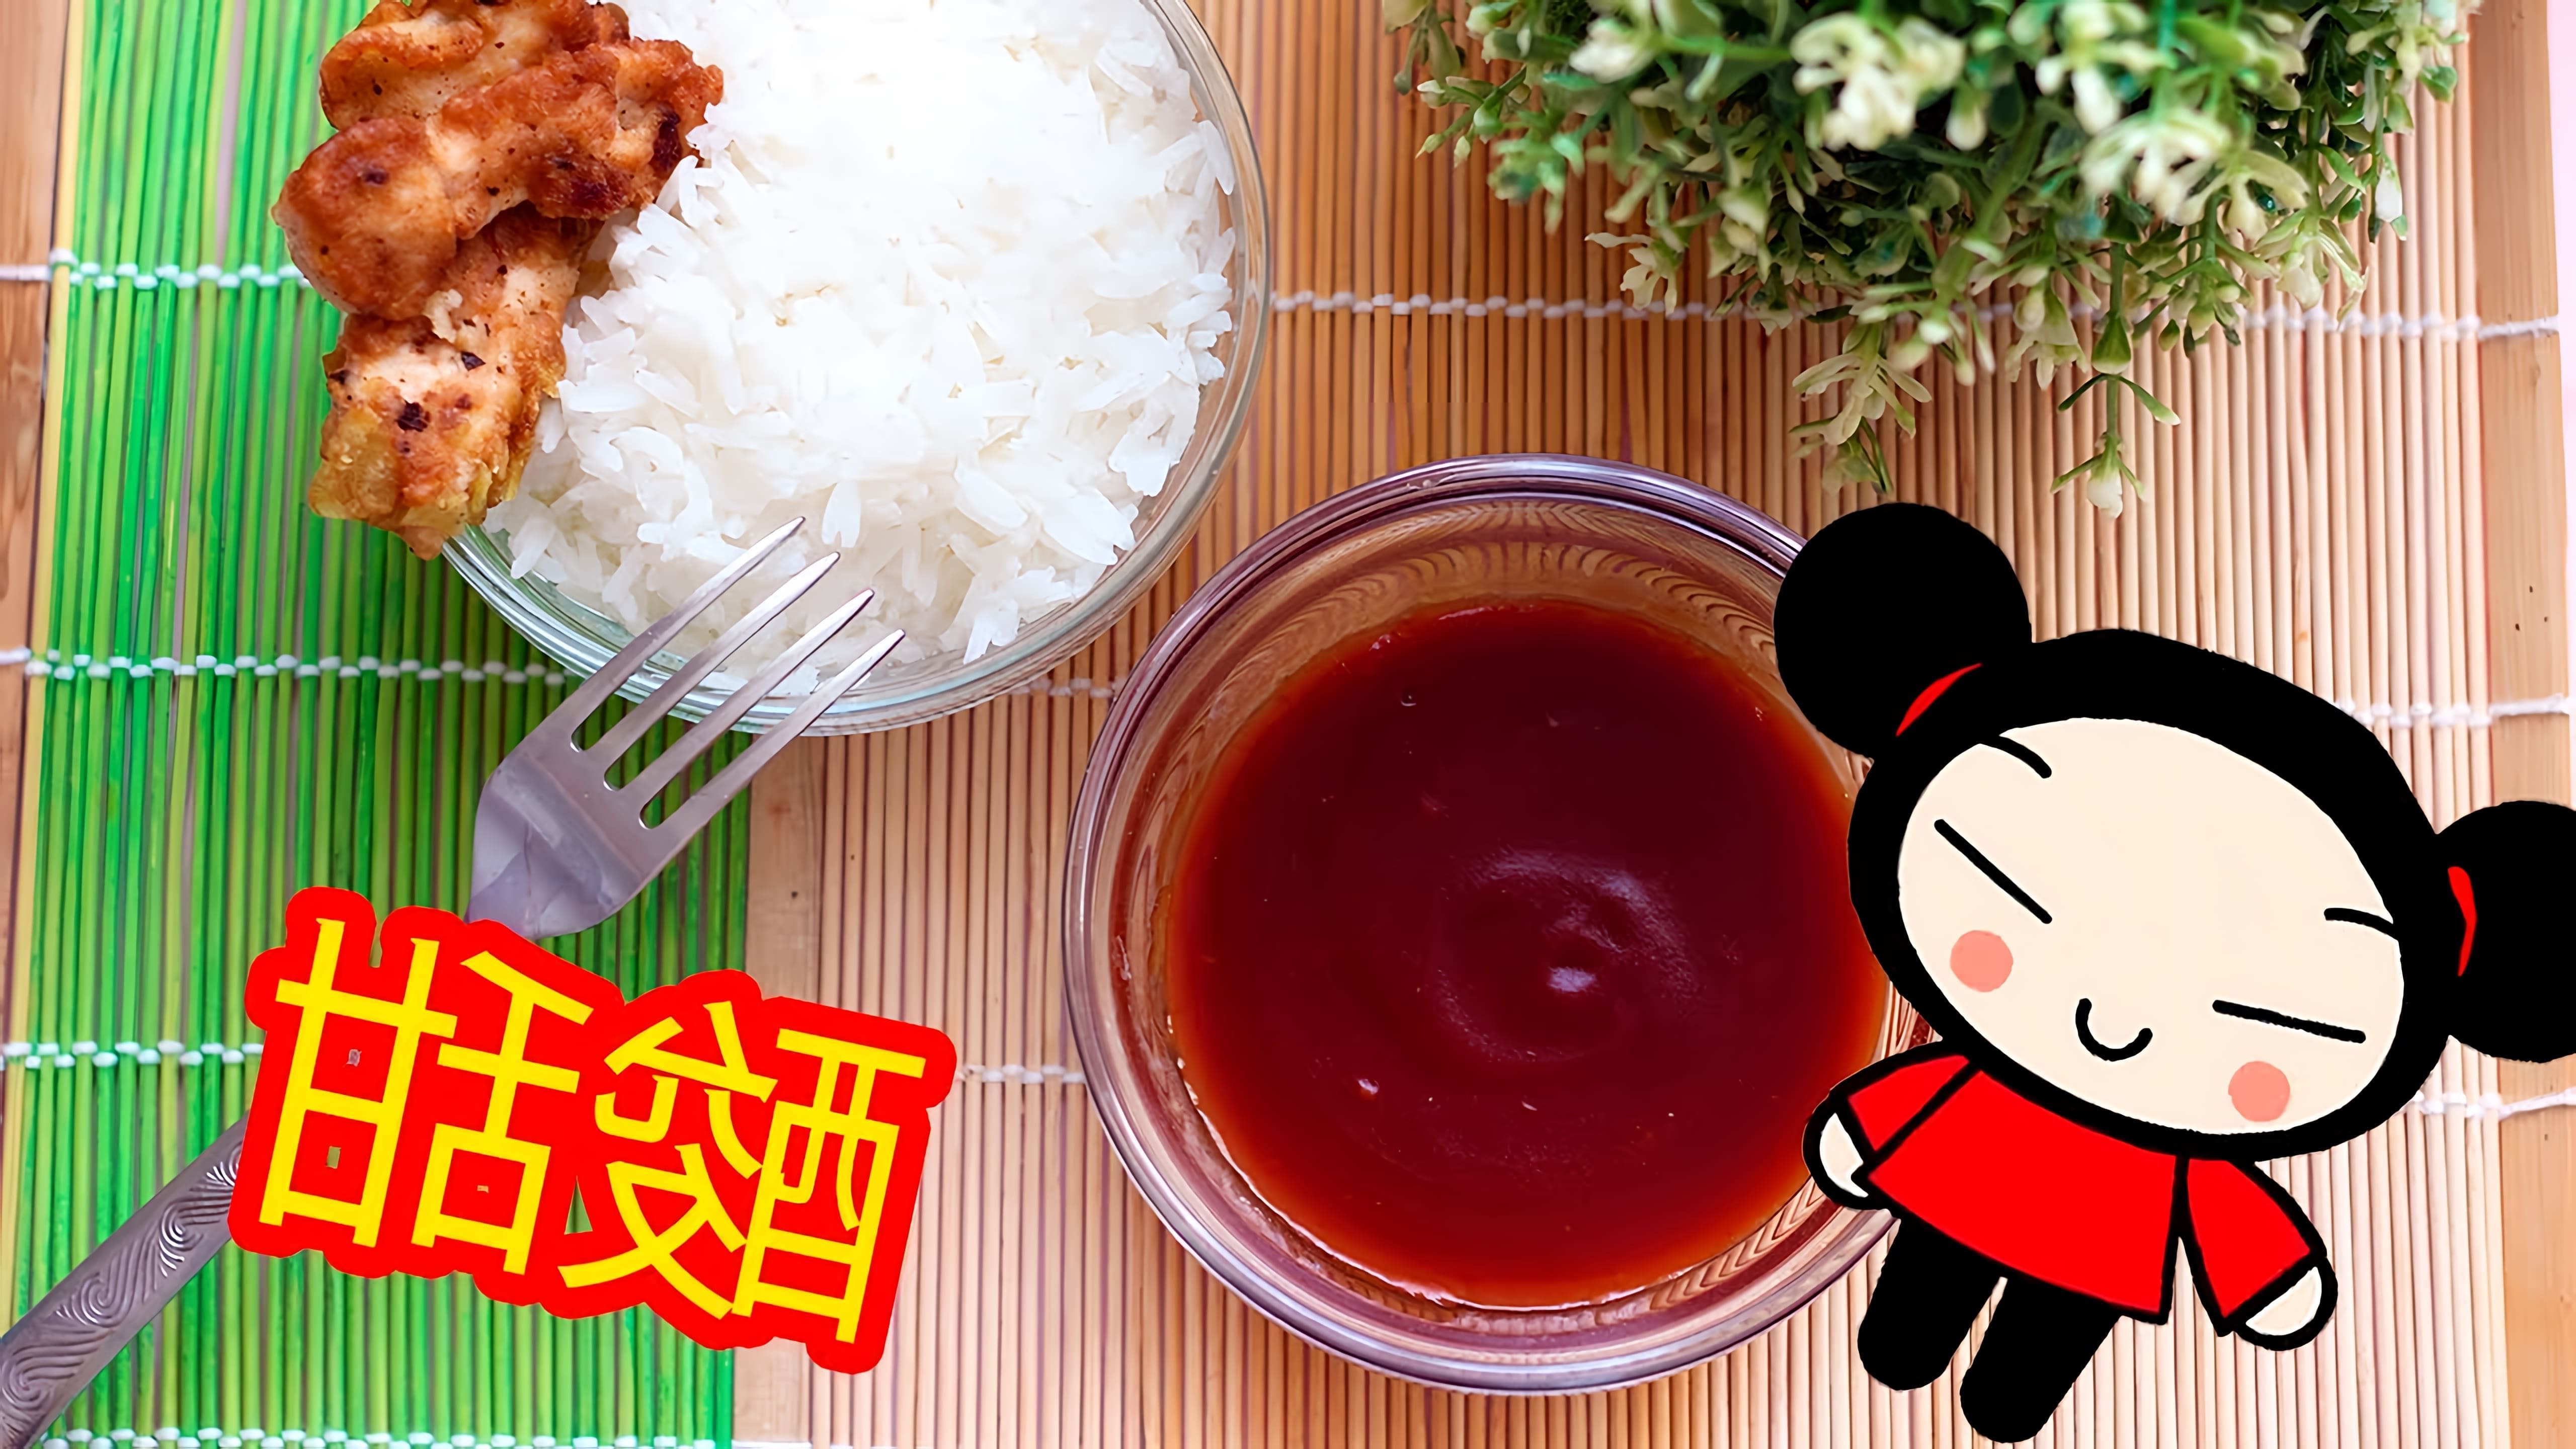 В этом видео я покажу, как приготовить китайский кисло-сладкий соус в домашних условиях